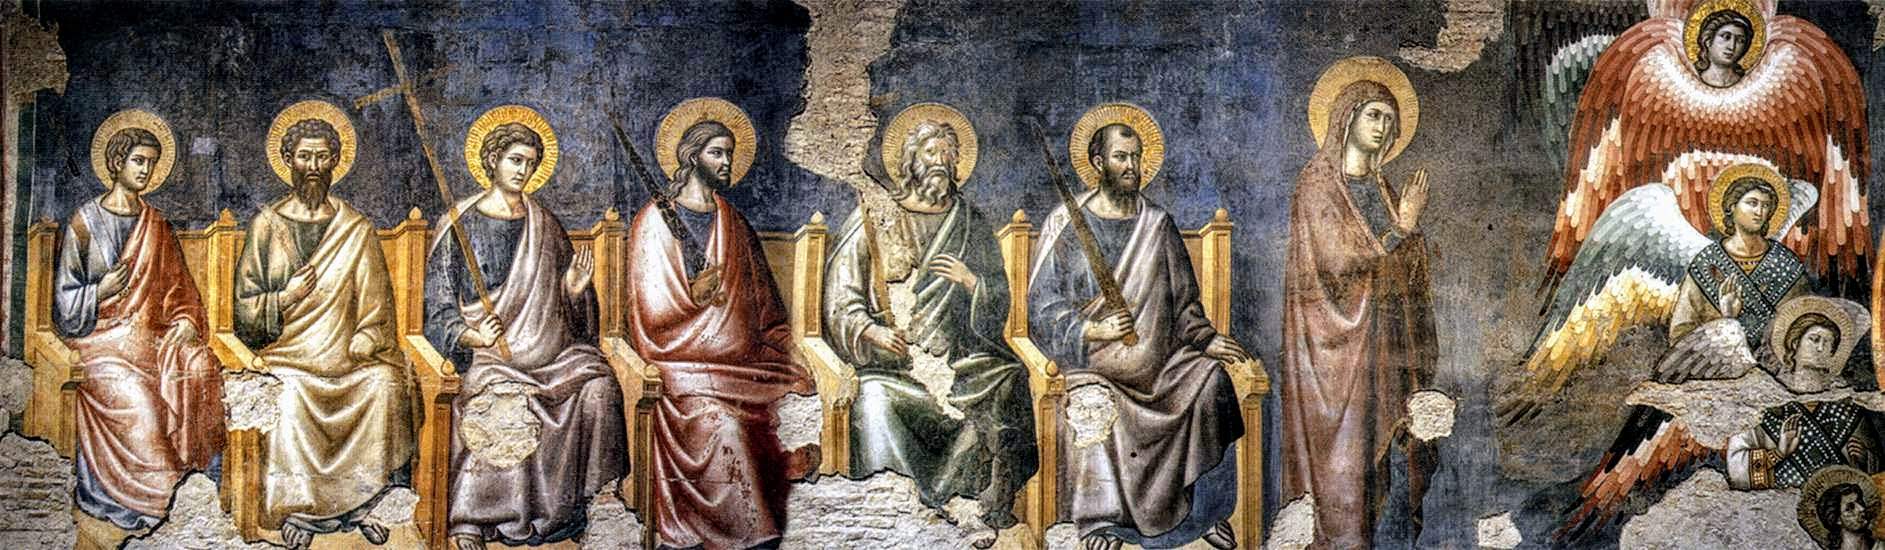 Fresco of the Last Judgement by Pietro Cavallini, Santa Cecilia in Trastevere, Rome